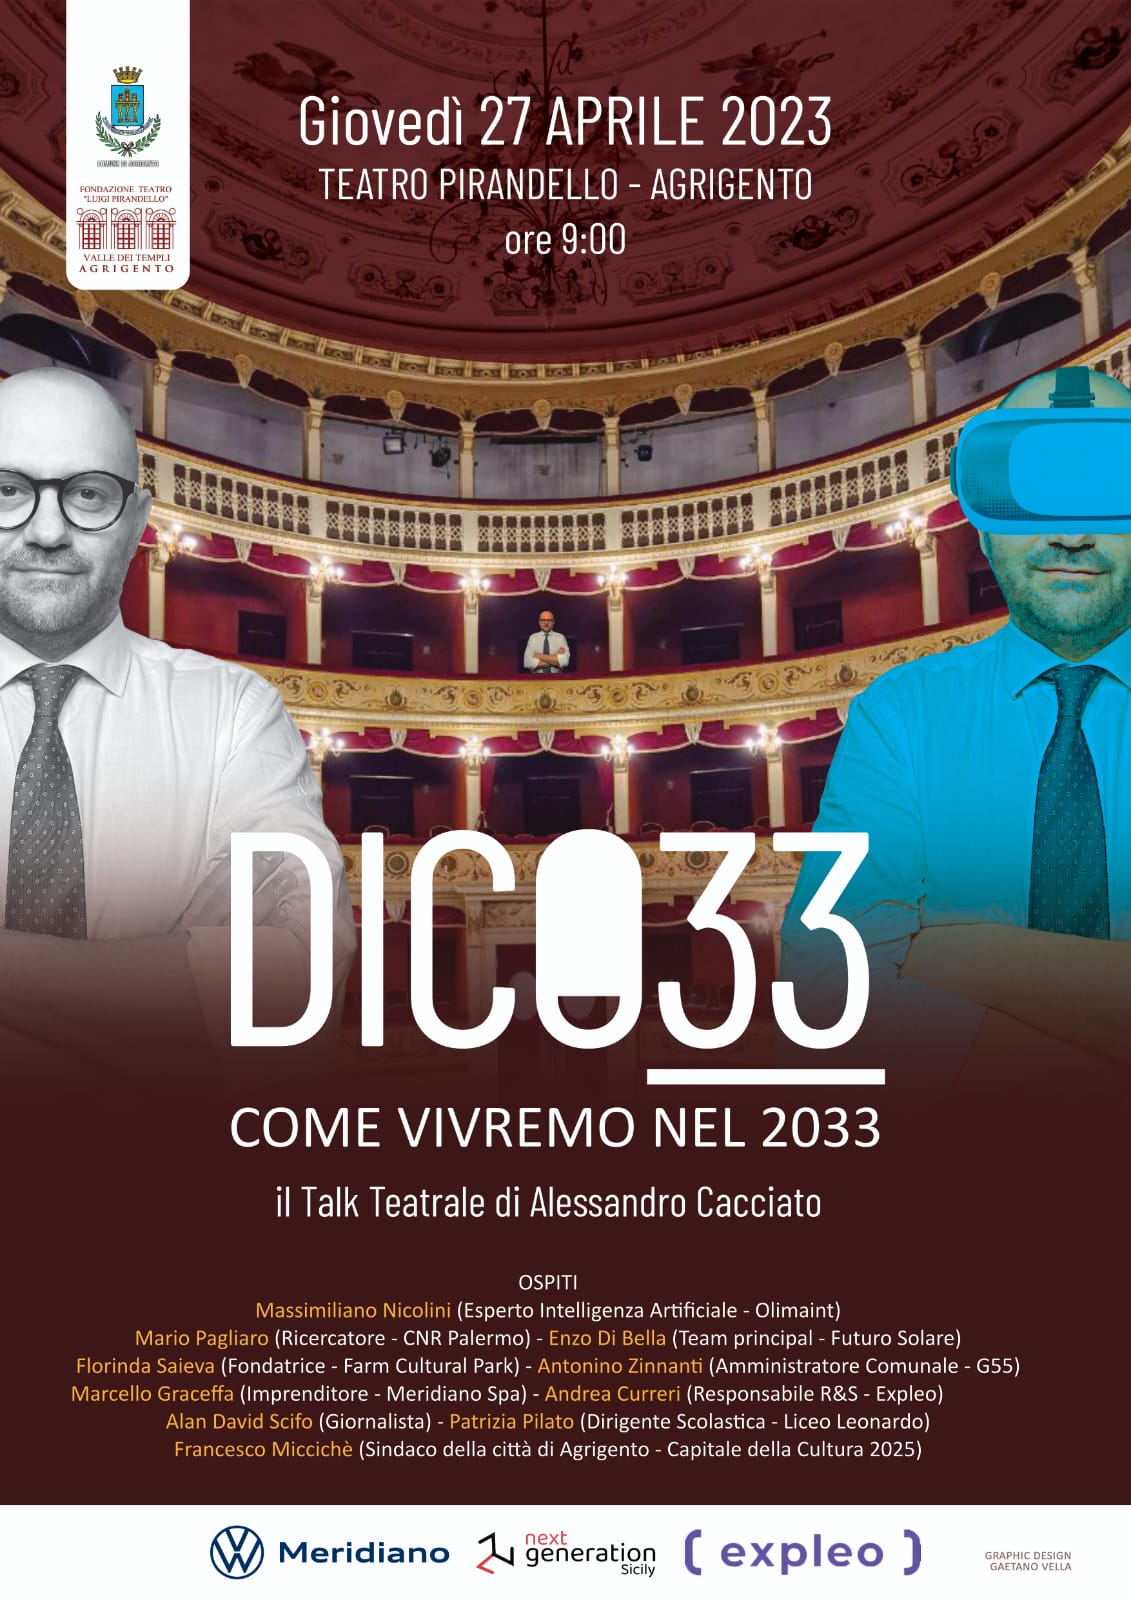 Dico 33 - Il Talk Teatrale di Alessandro Cacciato tenutosi per la I volta il 27 Aprile 2023 ad Agrigento